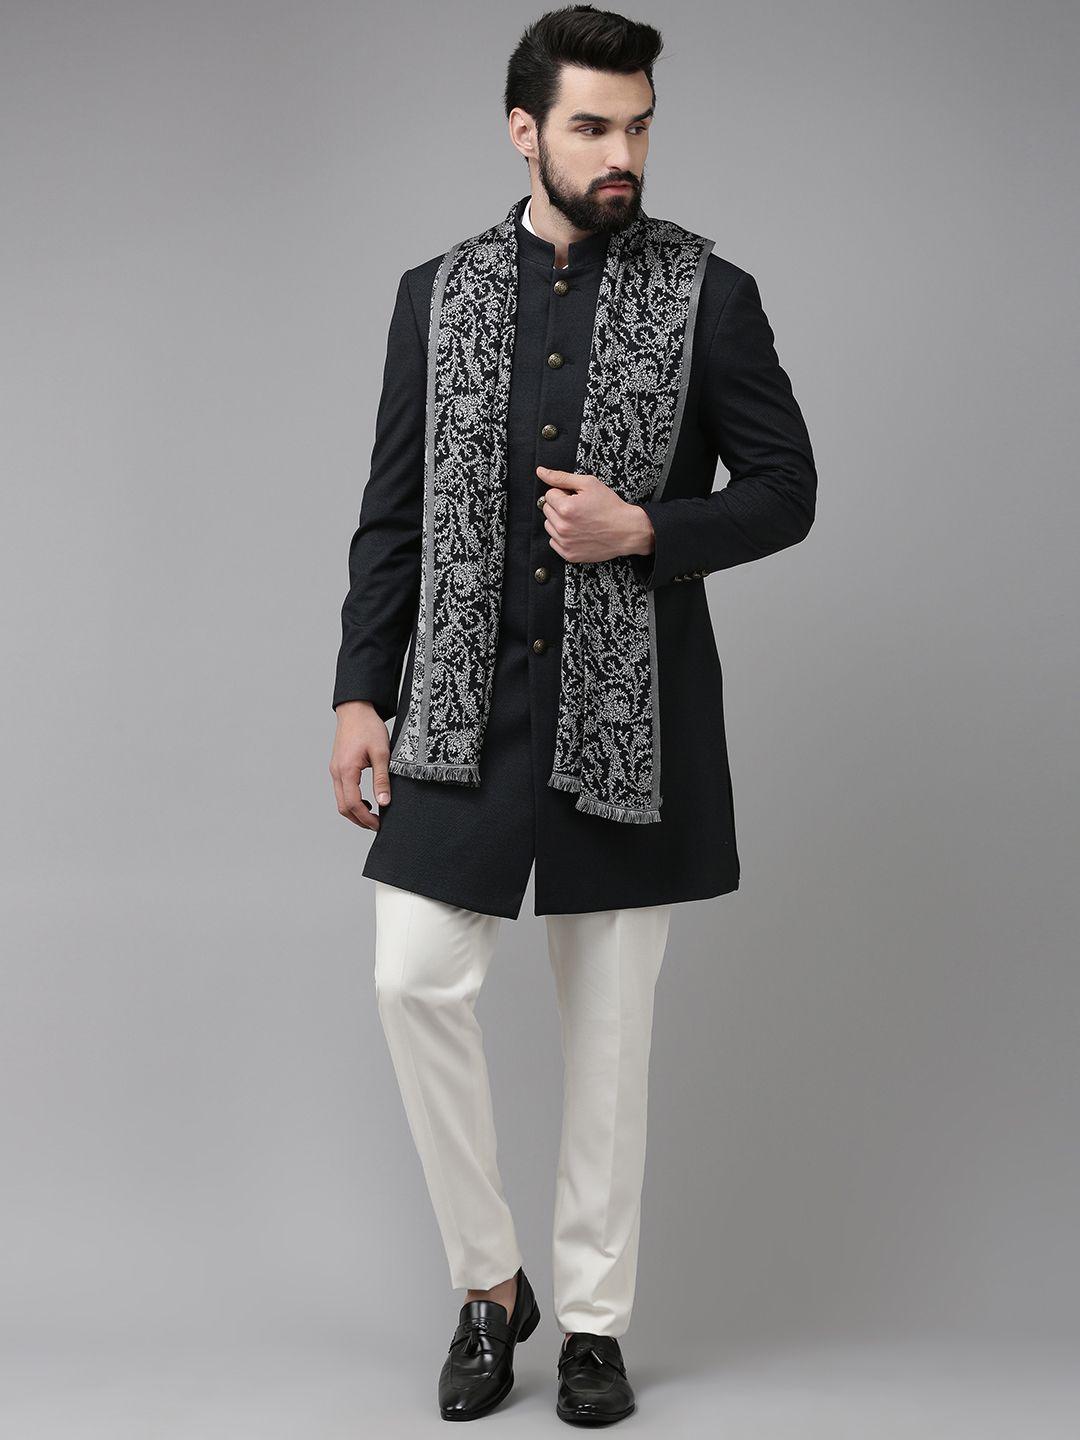 blackberrys men black self-design slim fit bandhgala blazer & trousers with shawl